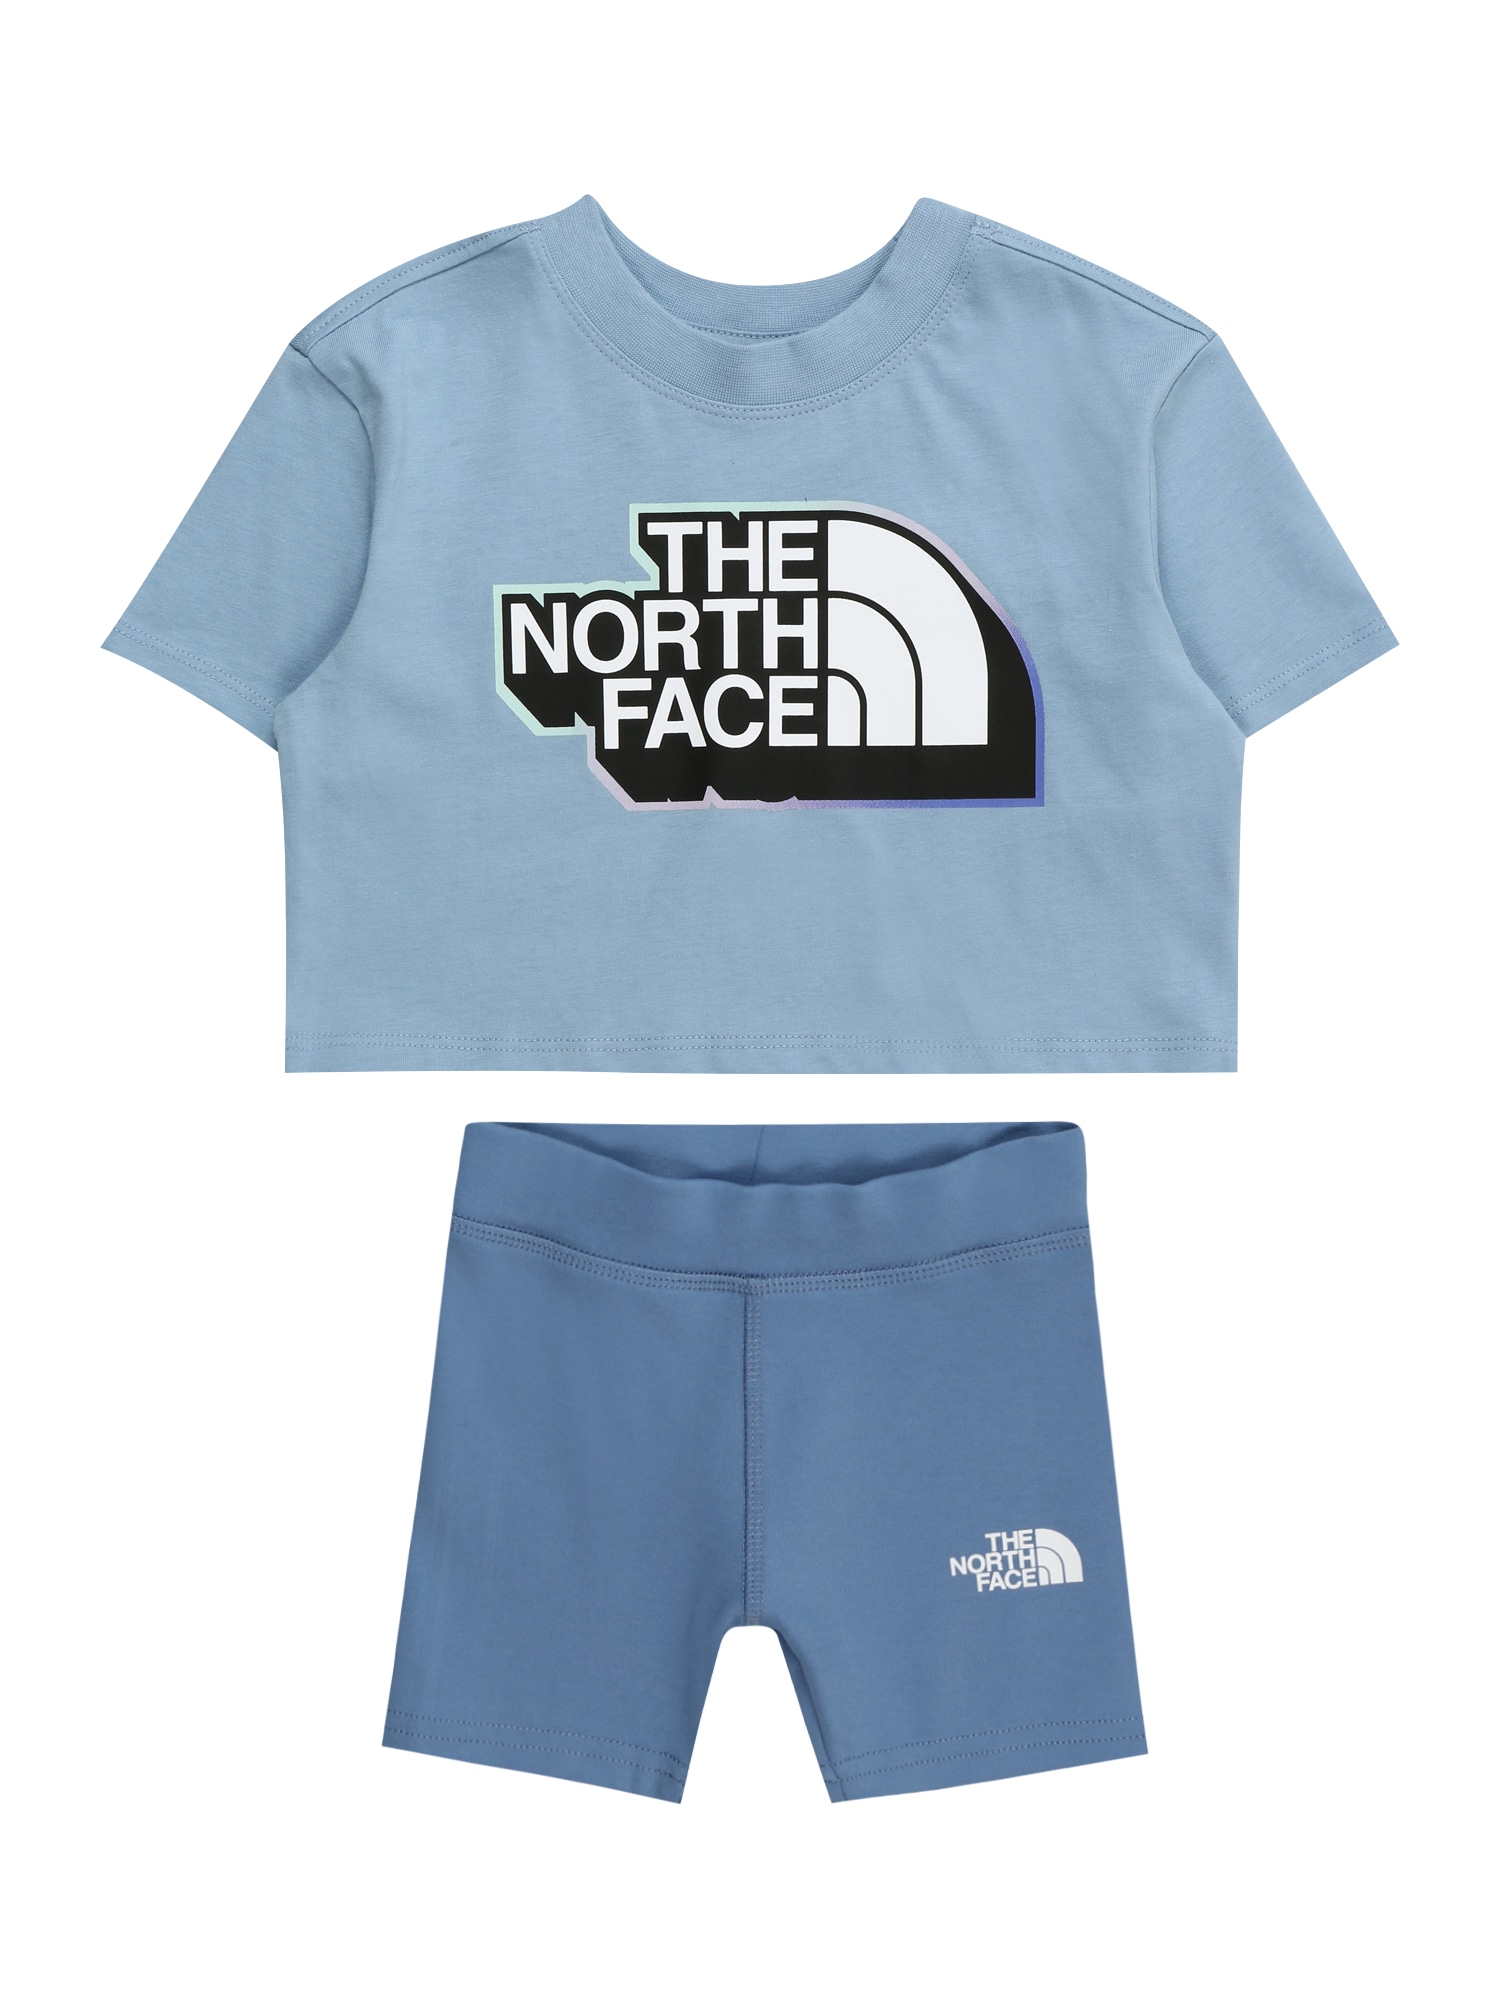 THE NORTH FACE Sportinis kostiumas mėlyna / šviesiai mėlyna / juoda / balta